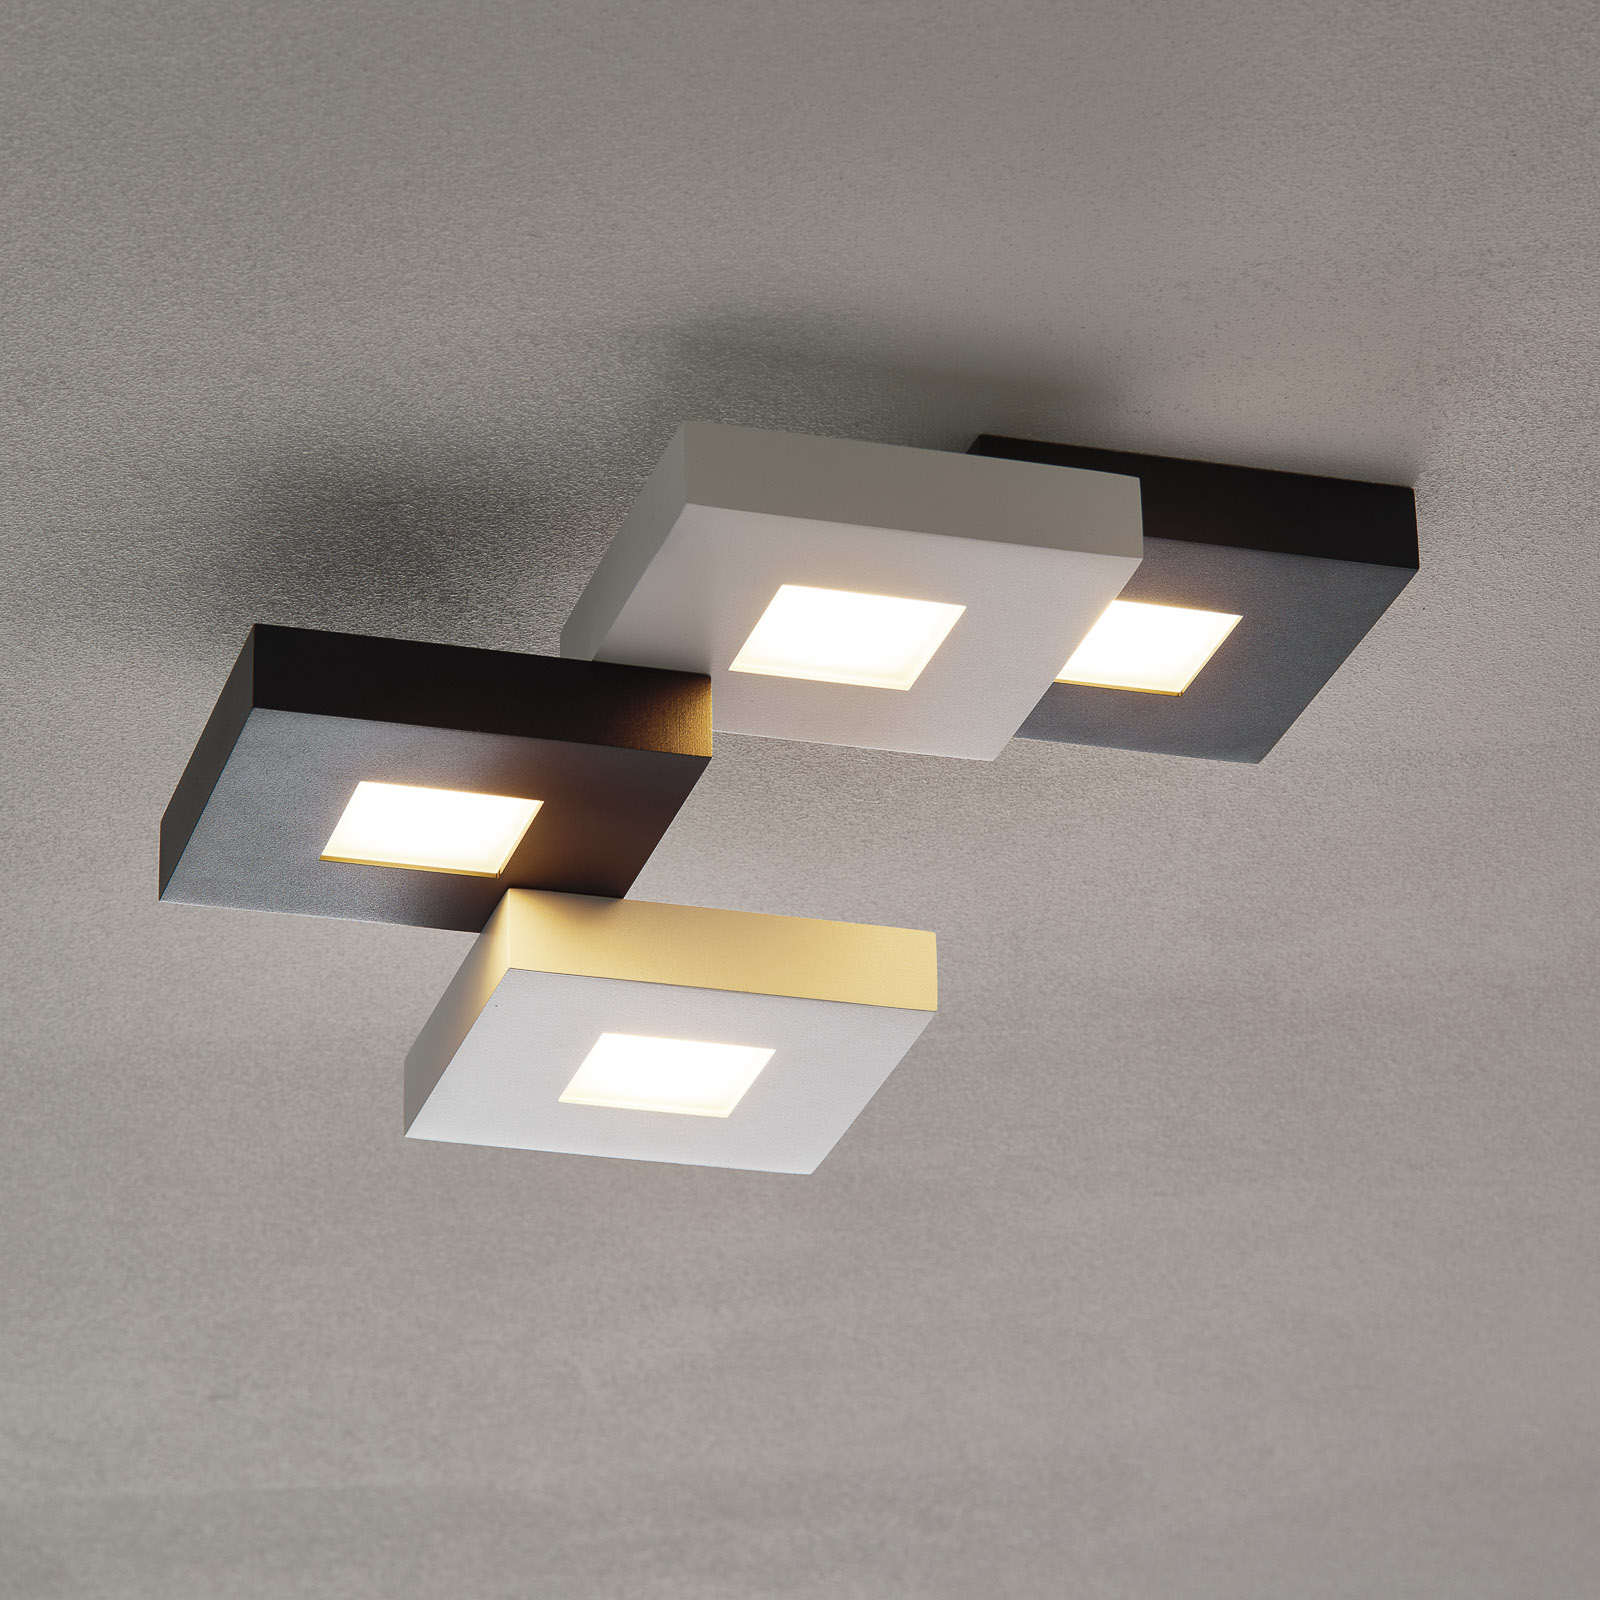 Cubus – LED-taklampa i svartvit, 4 ljuskällor